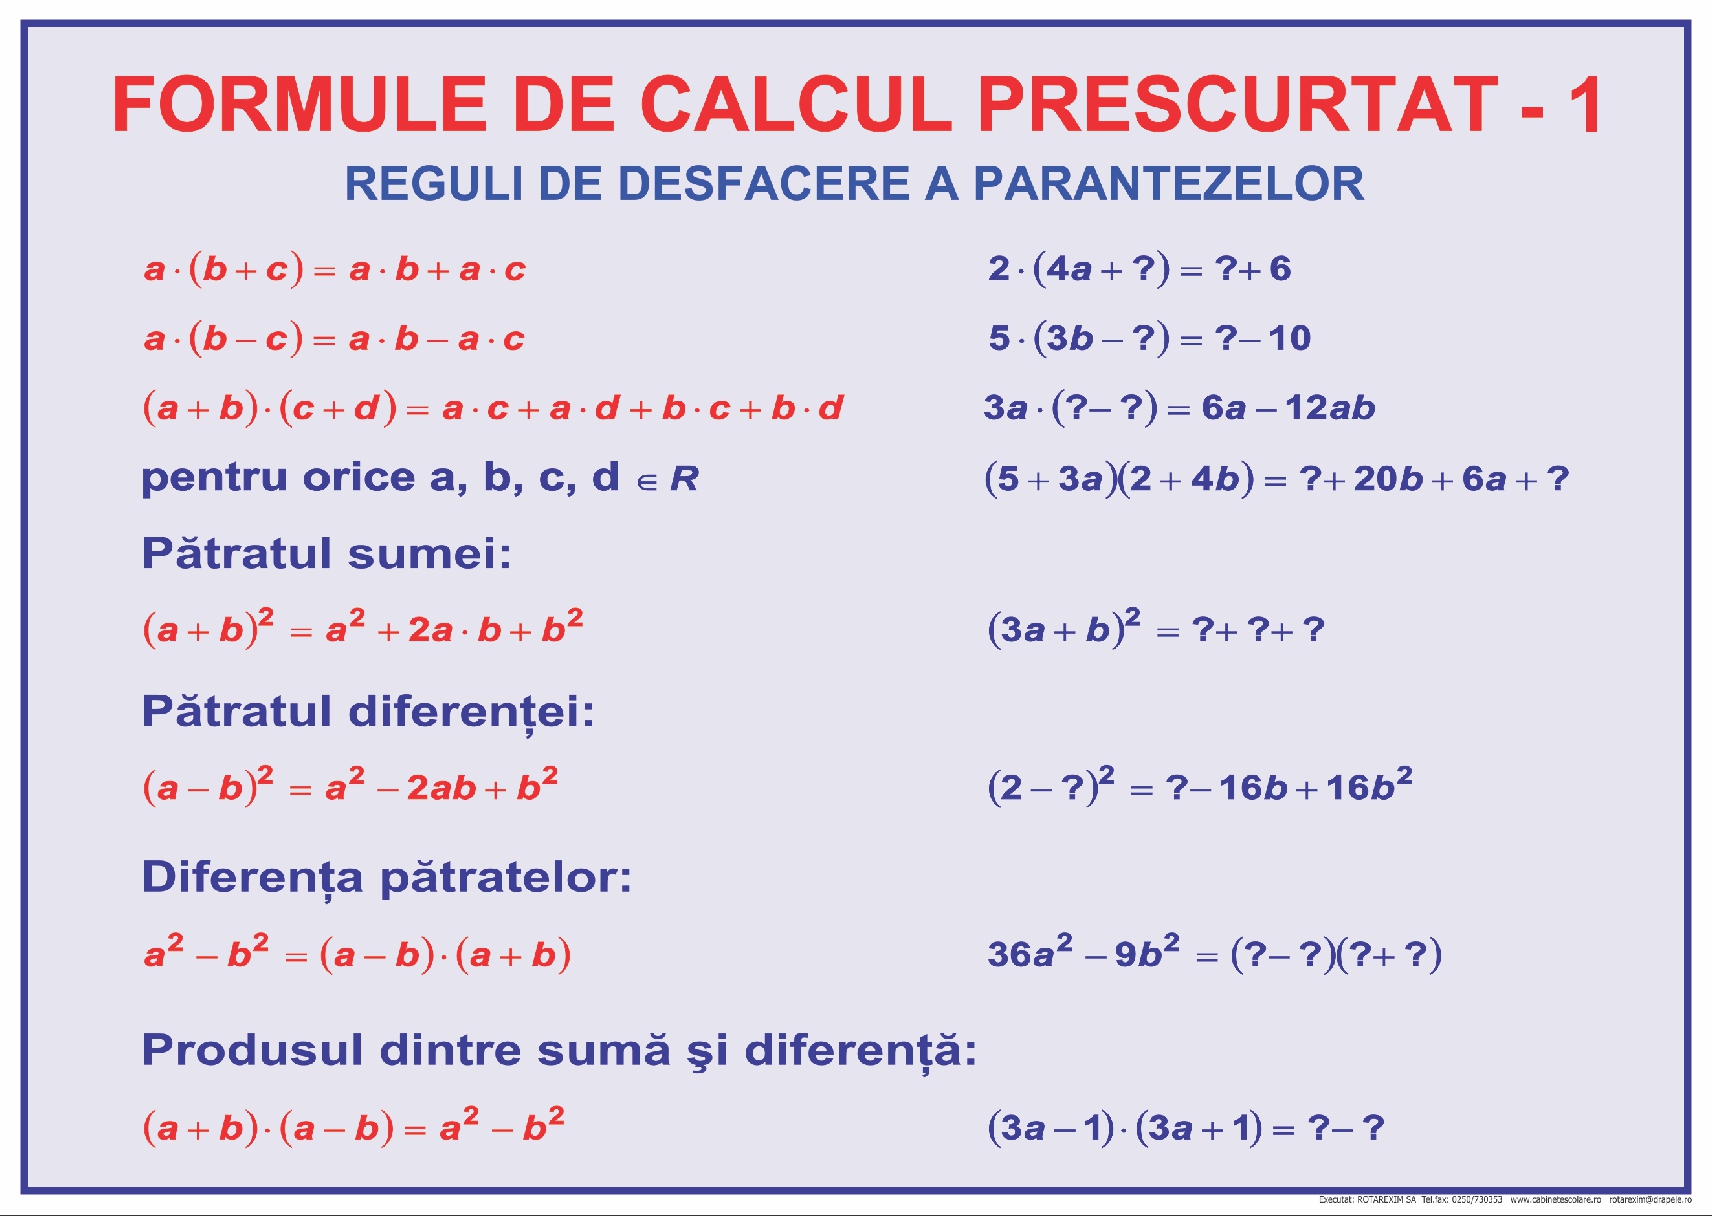 Formule de calcul prescurtat - 1